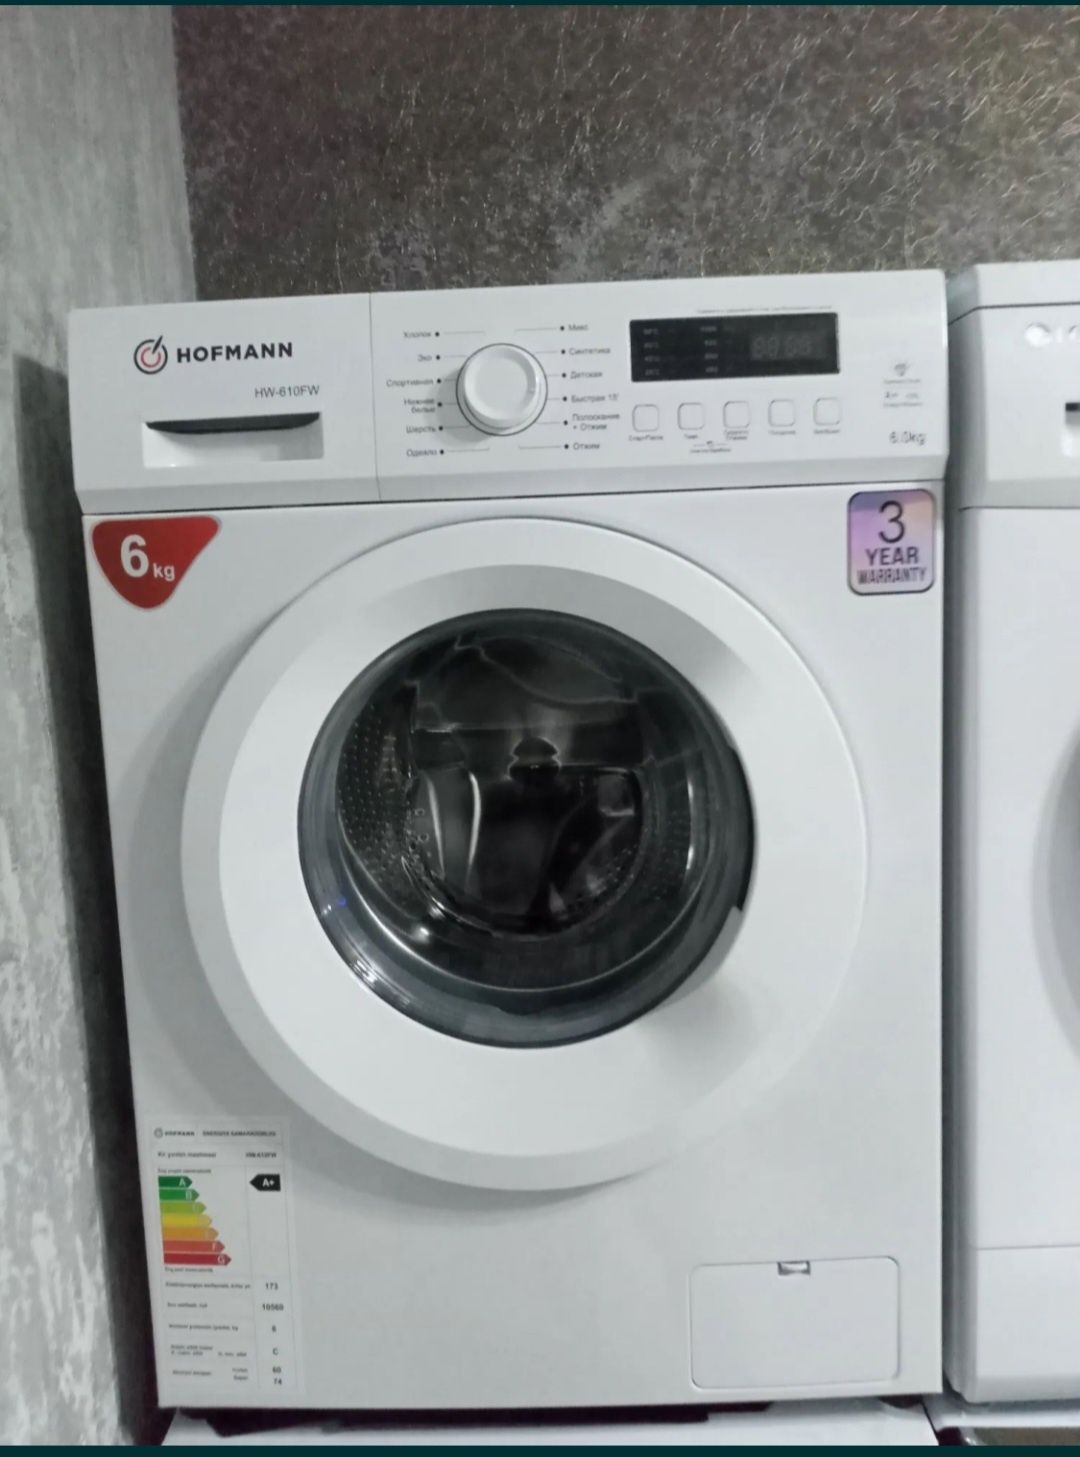 HOFMANN Invertor стиральная машина 6кг бесплатной доставкой